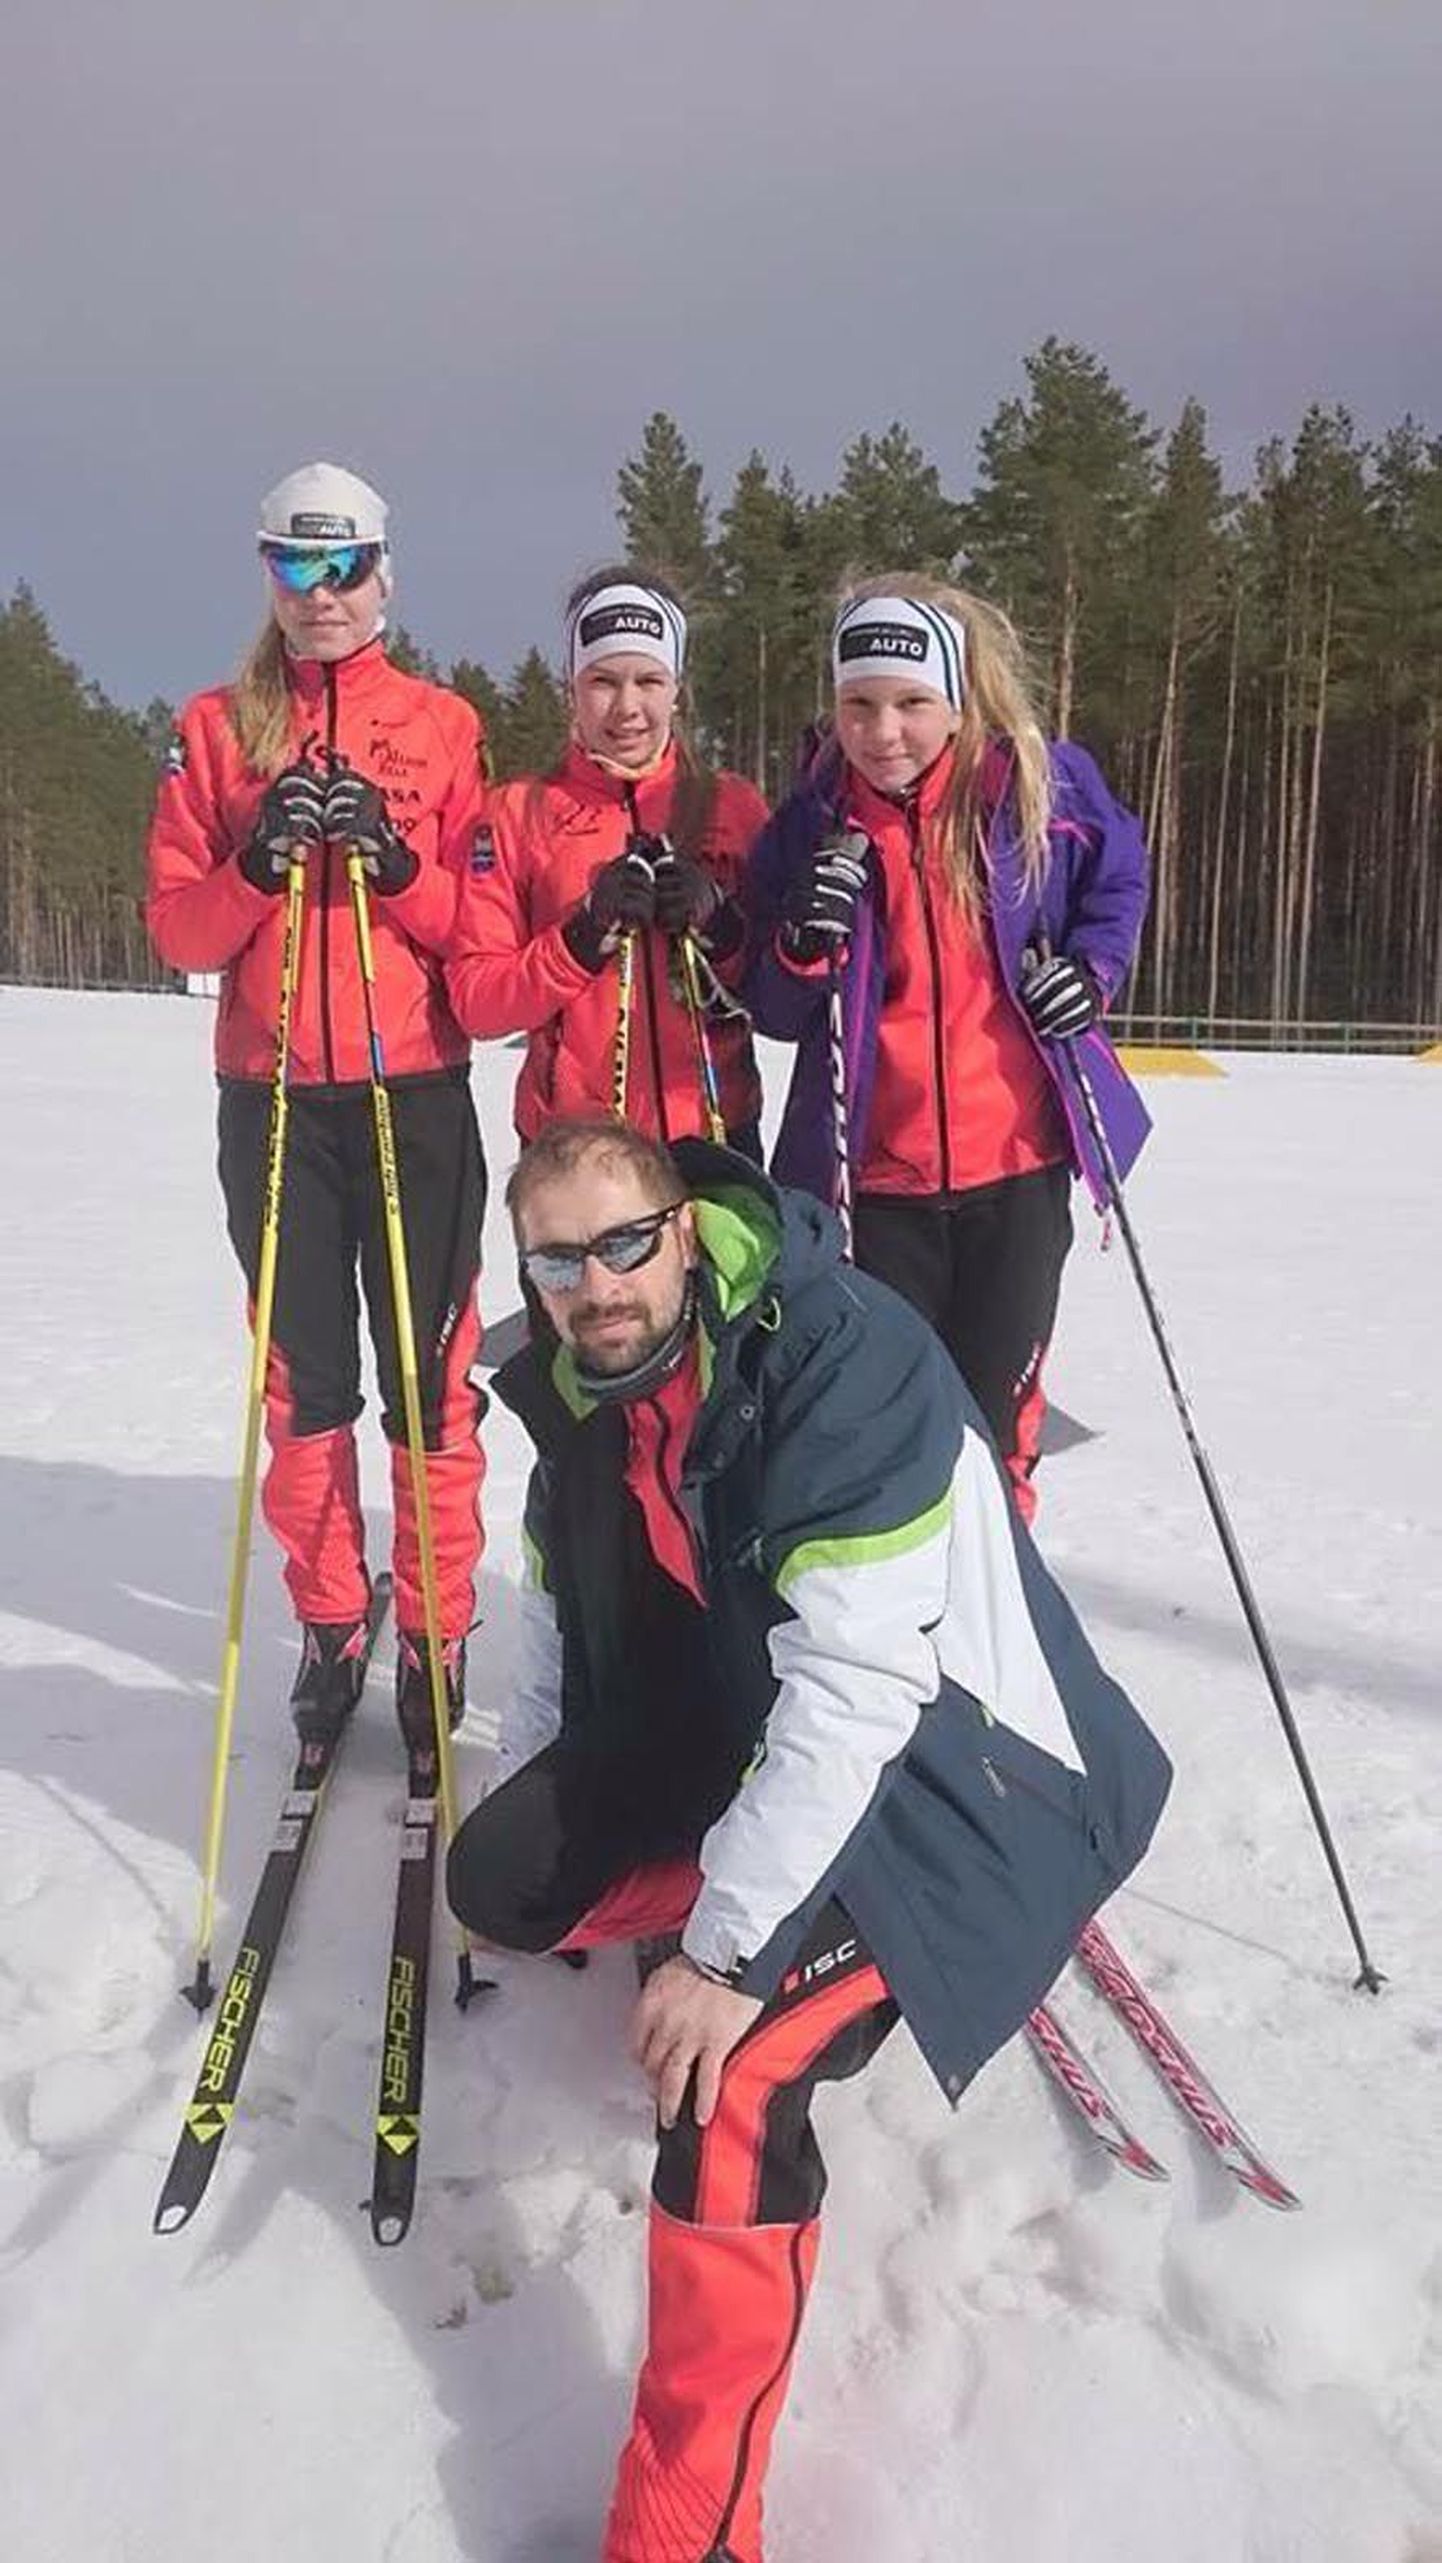 Nii nagu Ambla SK suusatajad, näitasid end nädalavahetusel Jõulumäel olnud võistlustel heast küljest ka RR suusaklubi kasvandikud. Pildil on Anni ja Aiki Jalakas ning Karoliina Tõnisson, ees treener Raido Rohi.